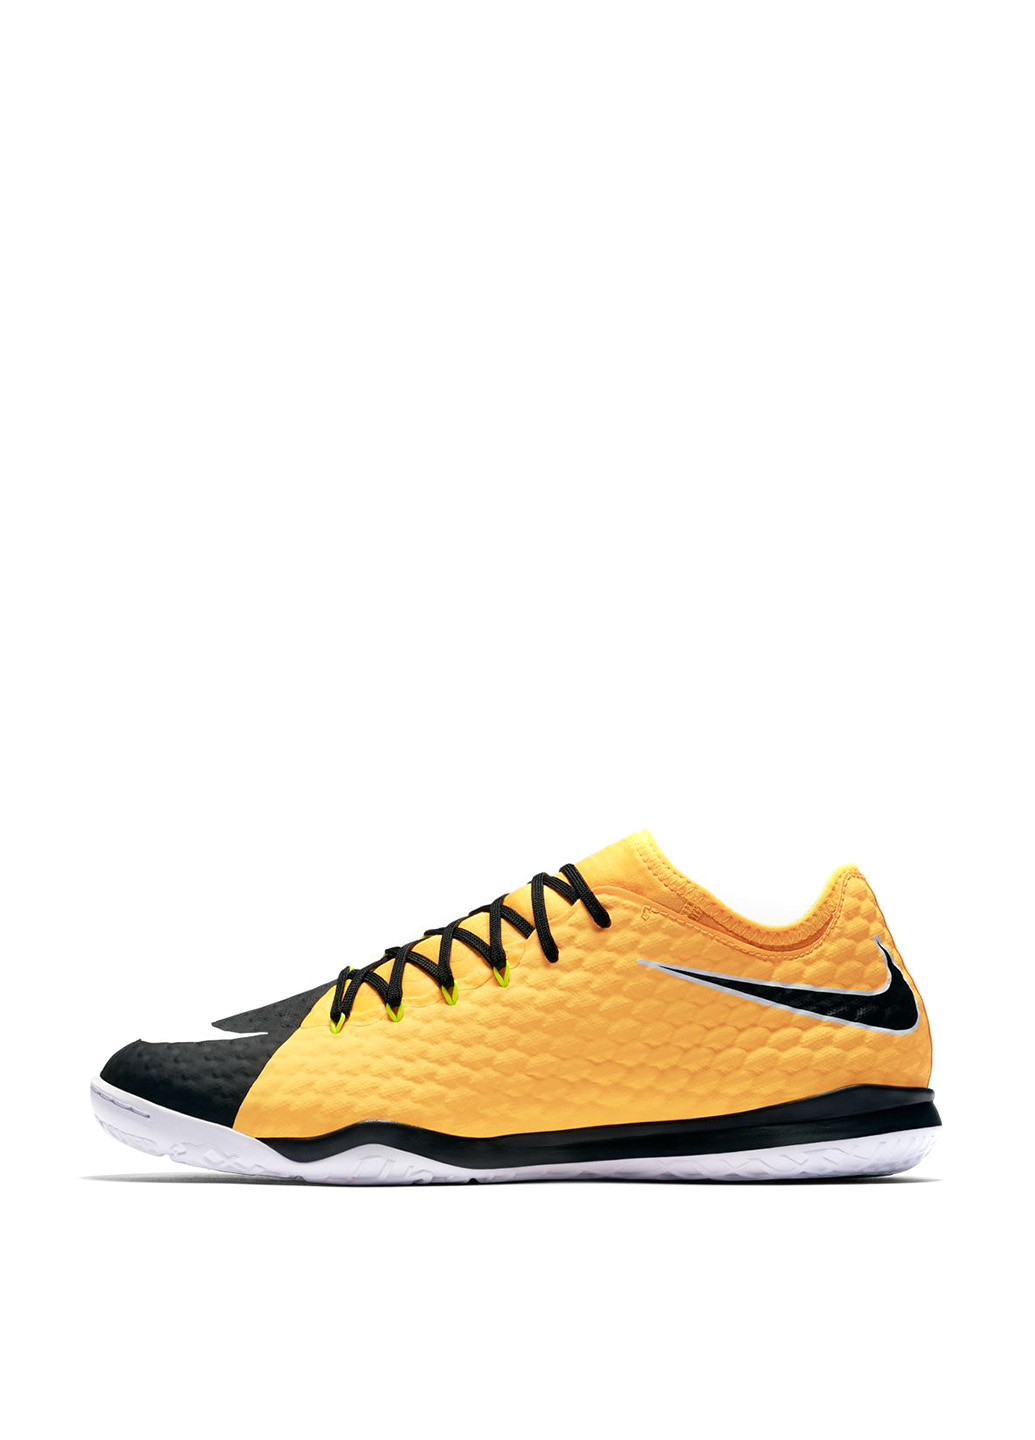 Желтые бутсы Nike